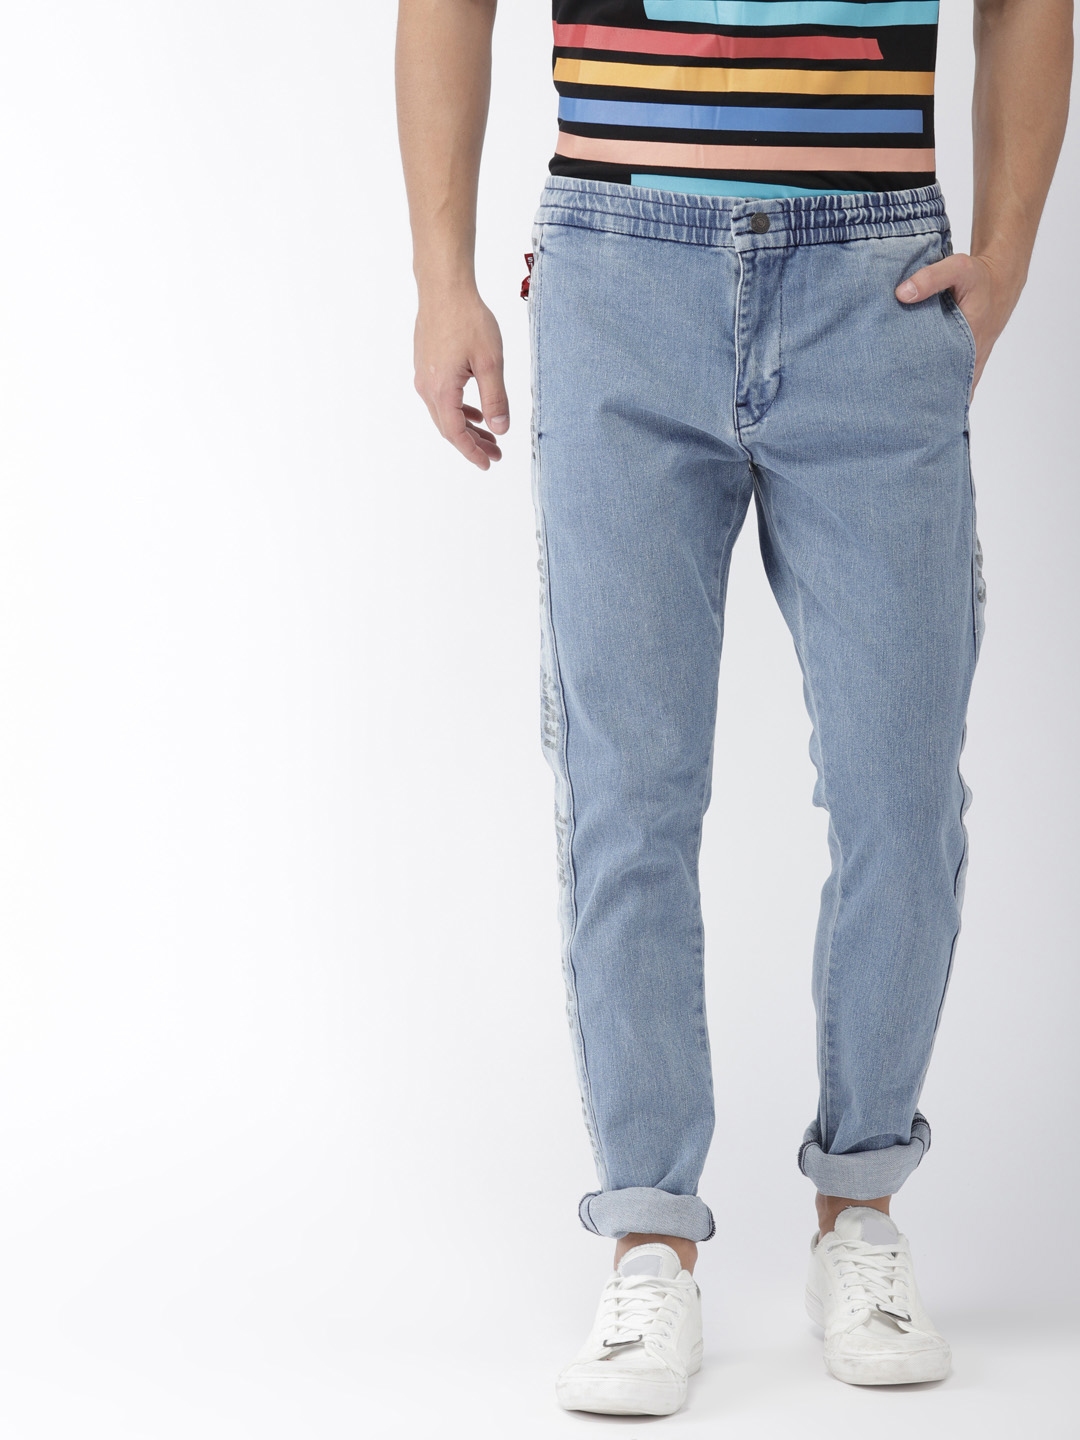 jogger jeans levis